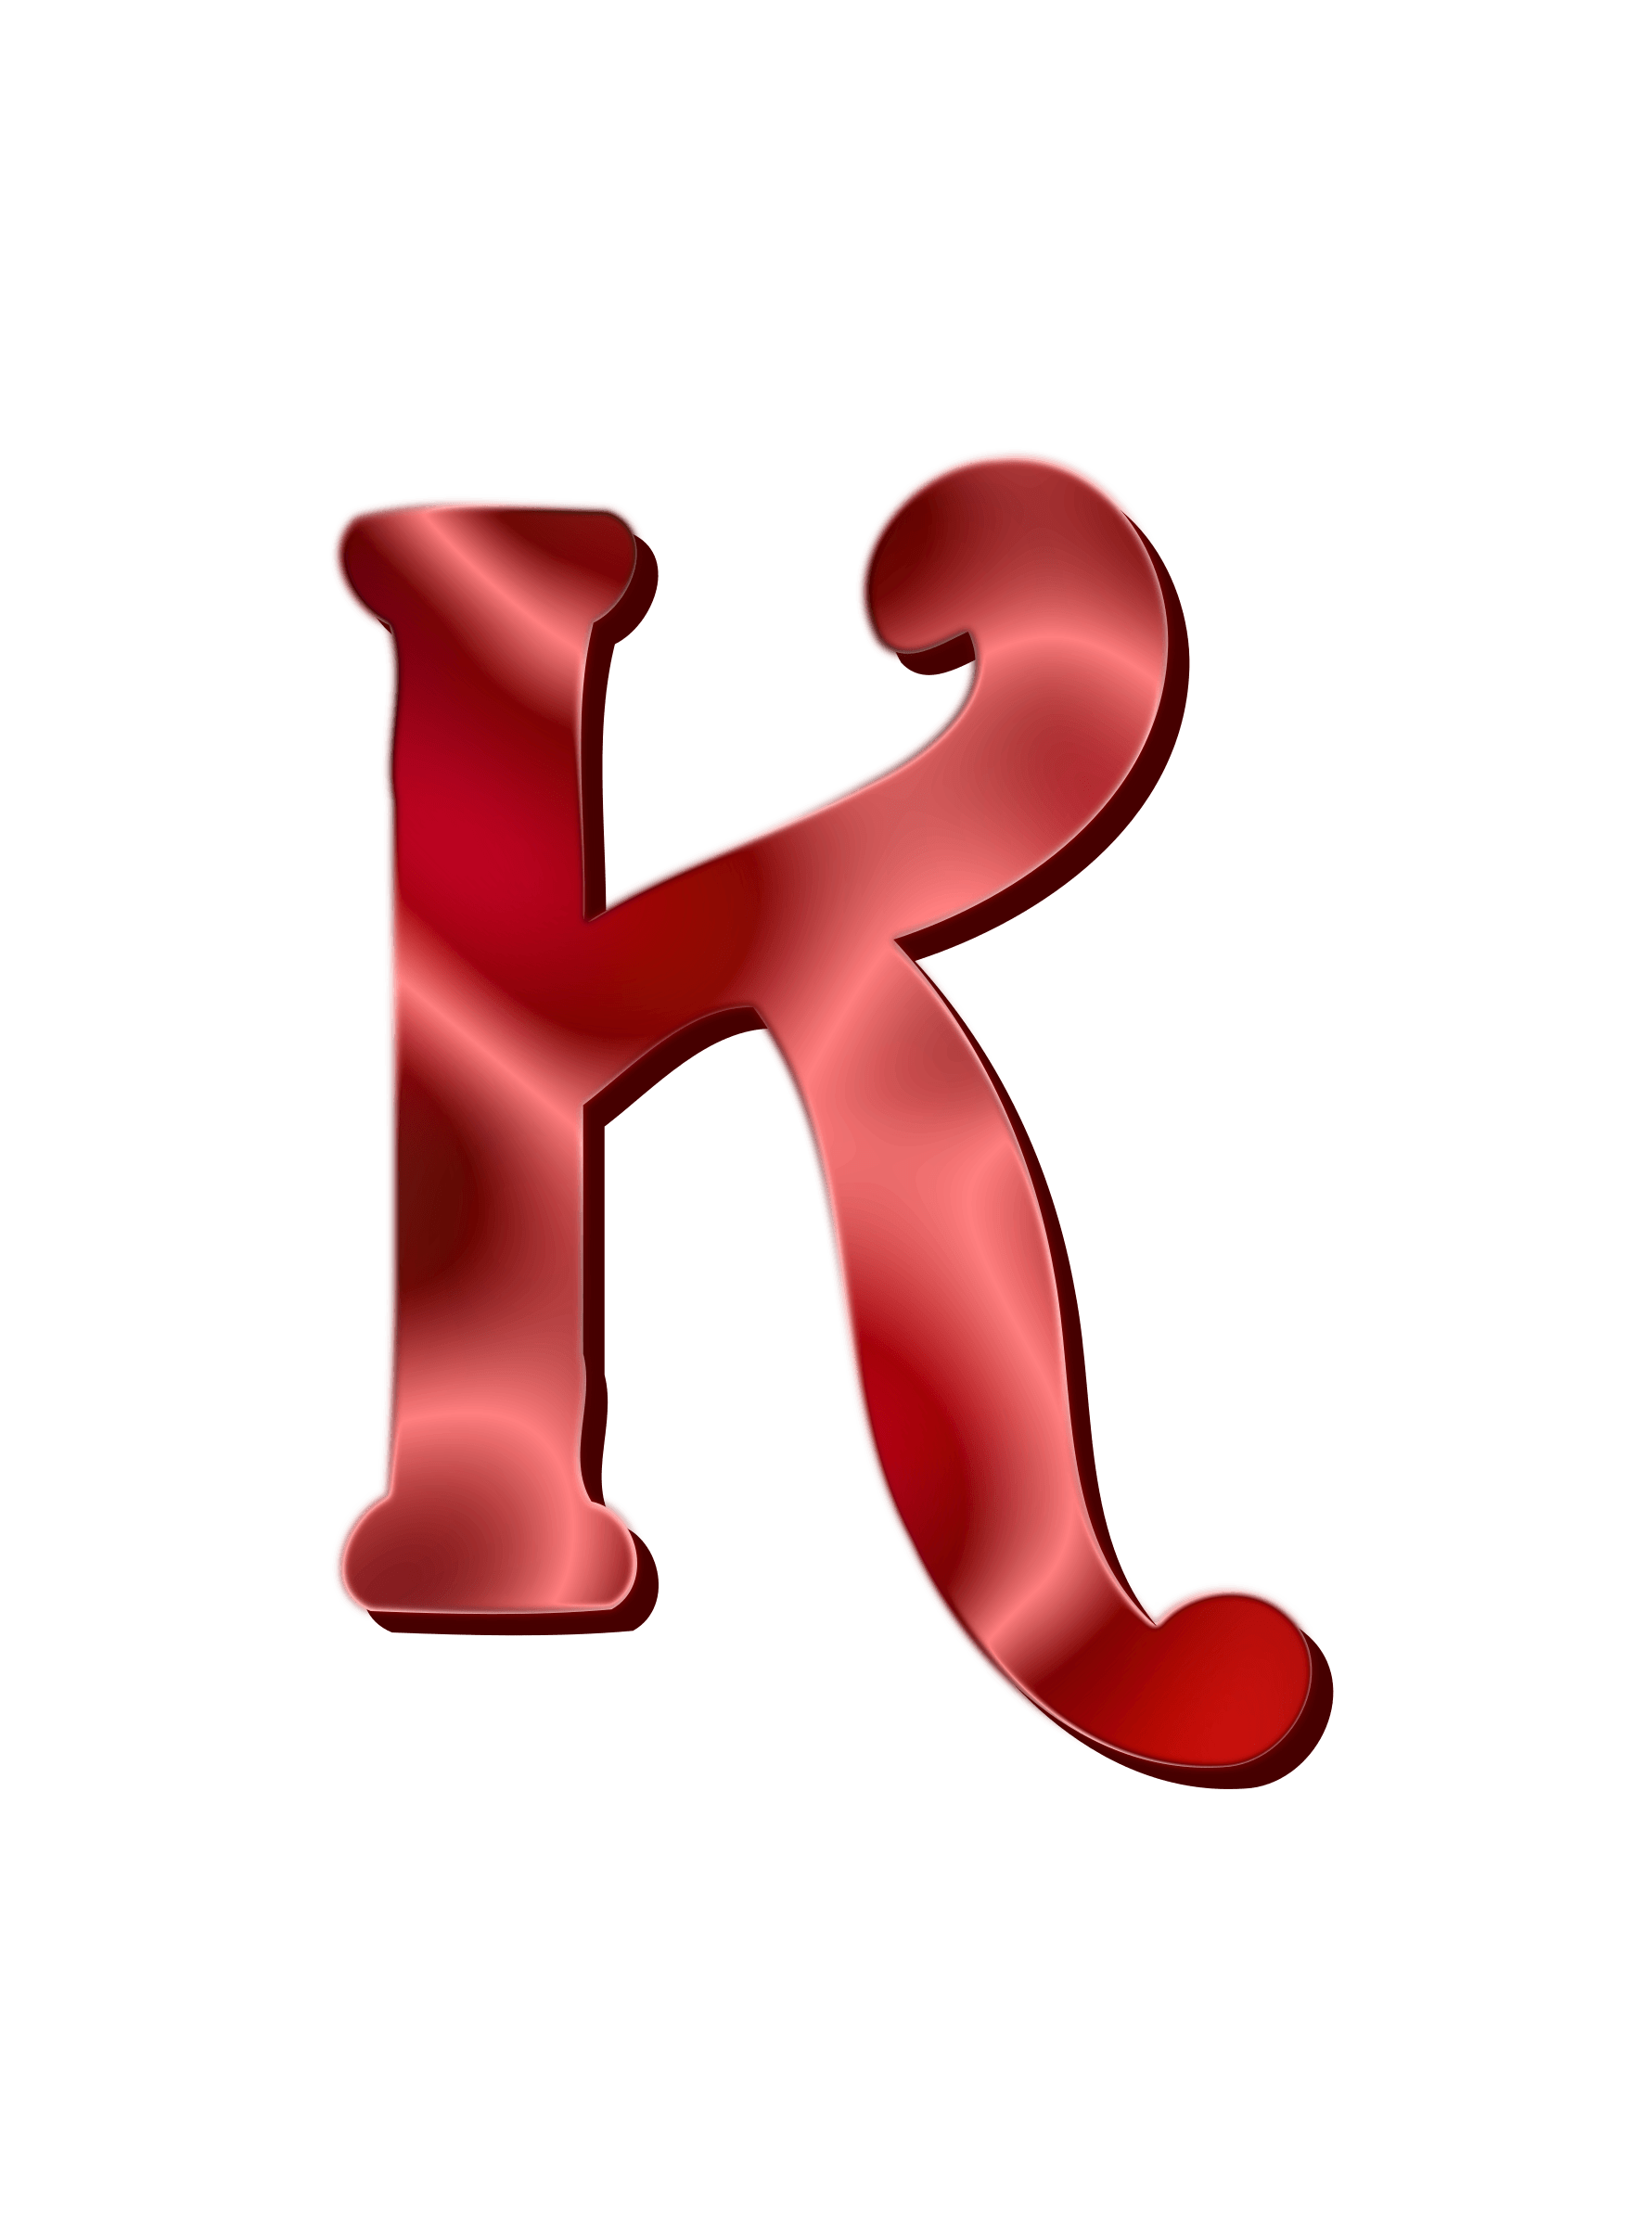 Big Red K Logo - Clipart letter K